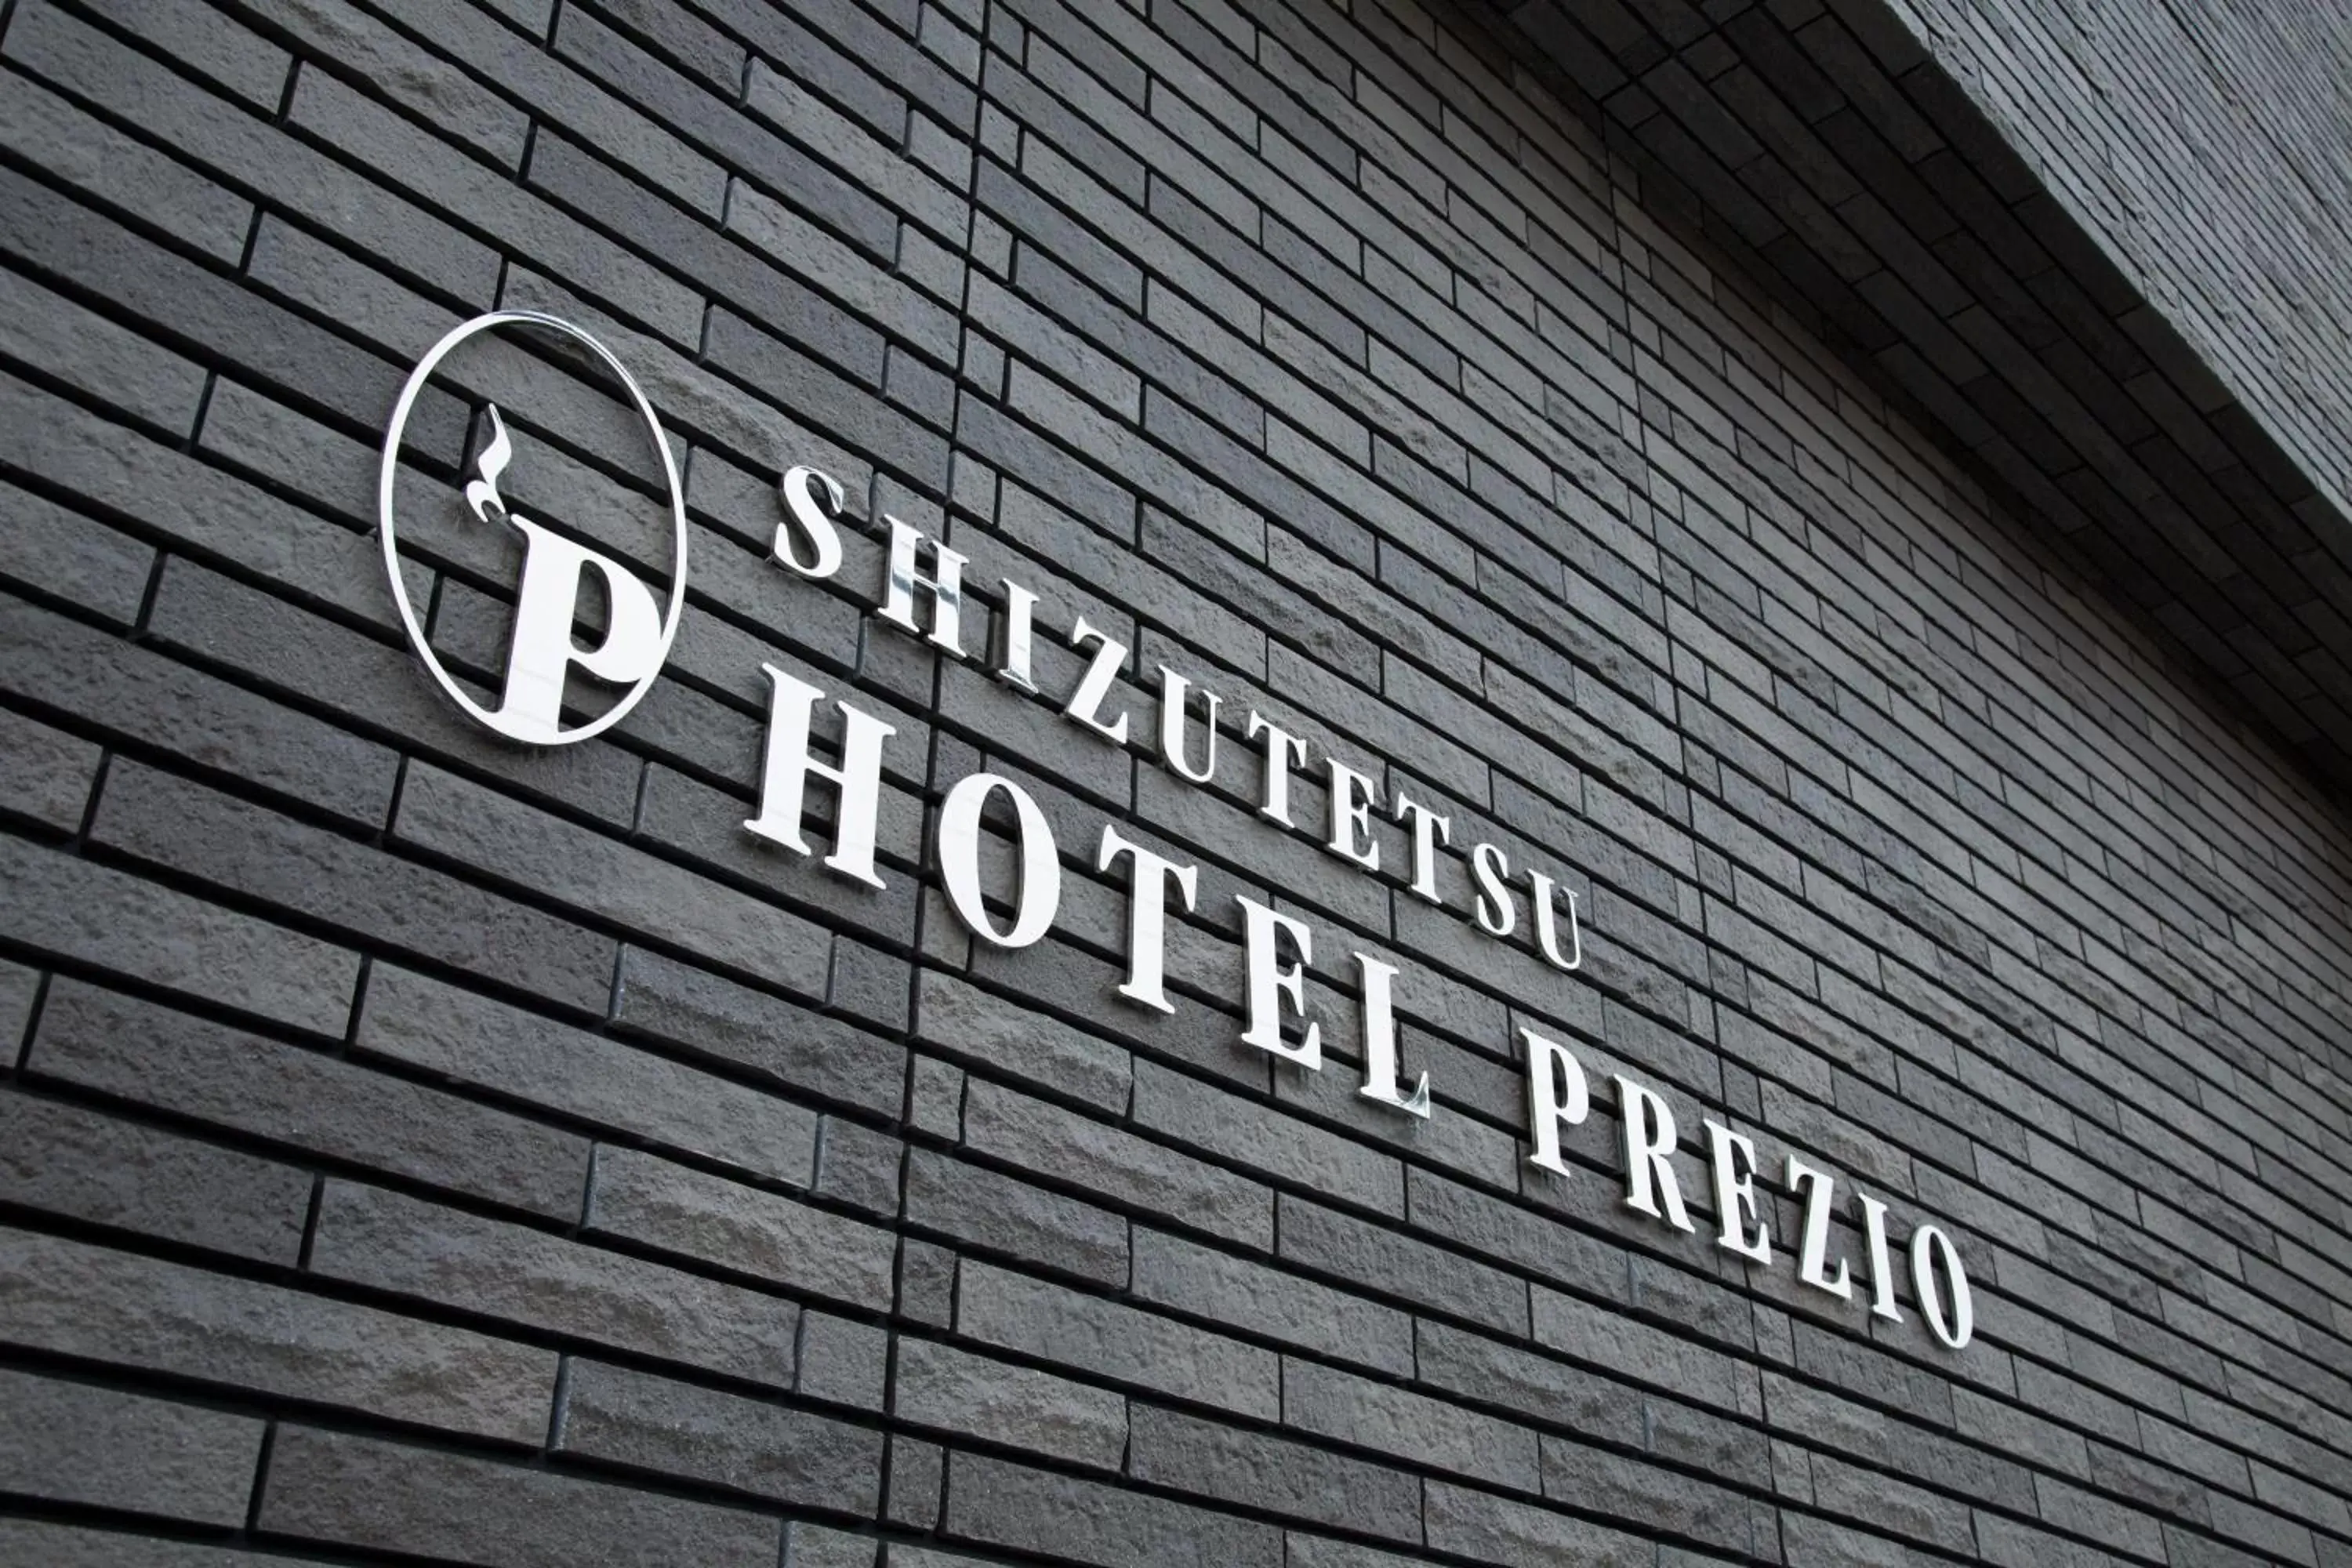 Shizutetsu Hotel Prezio Hakataekimae